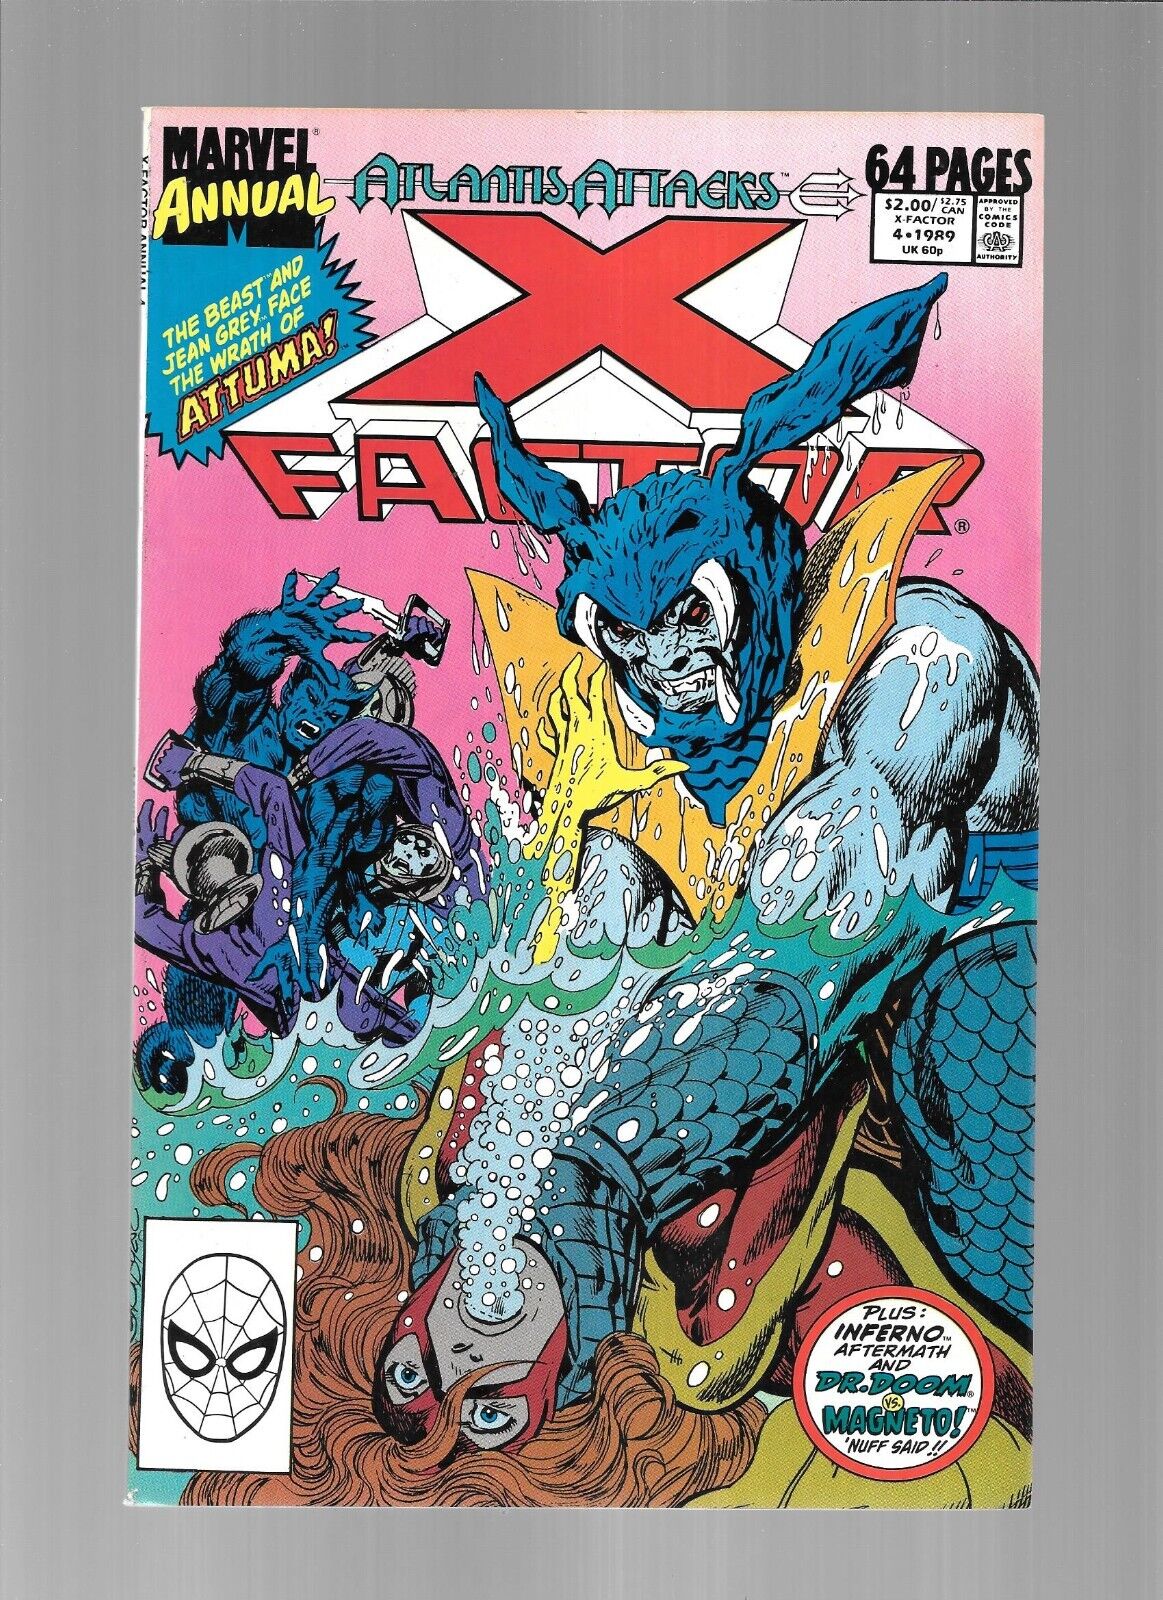 X-FACTOR ANNUAL 4 ATLANTIS ATTACKS X-MEN Beast Jean Grey Attuma Magneto Dr Doom